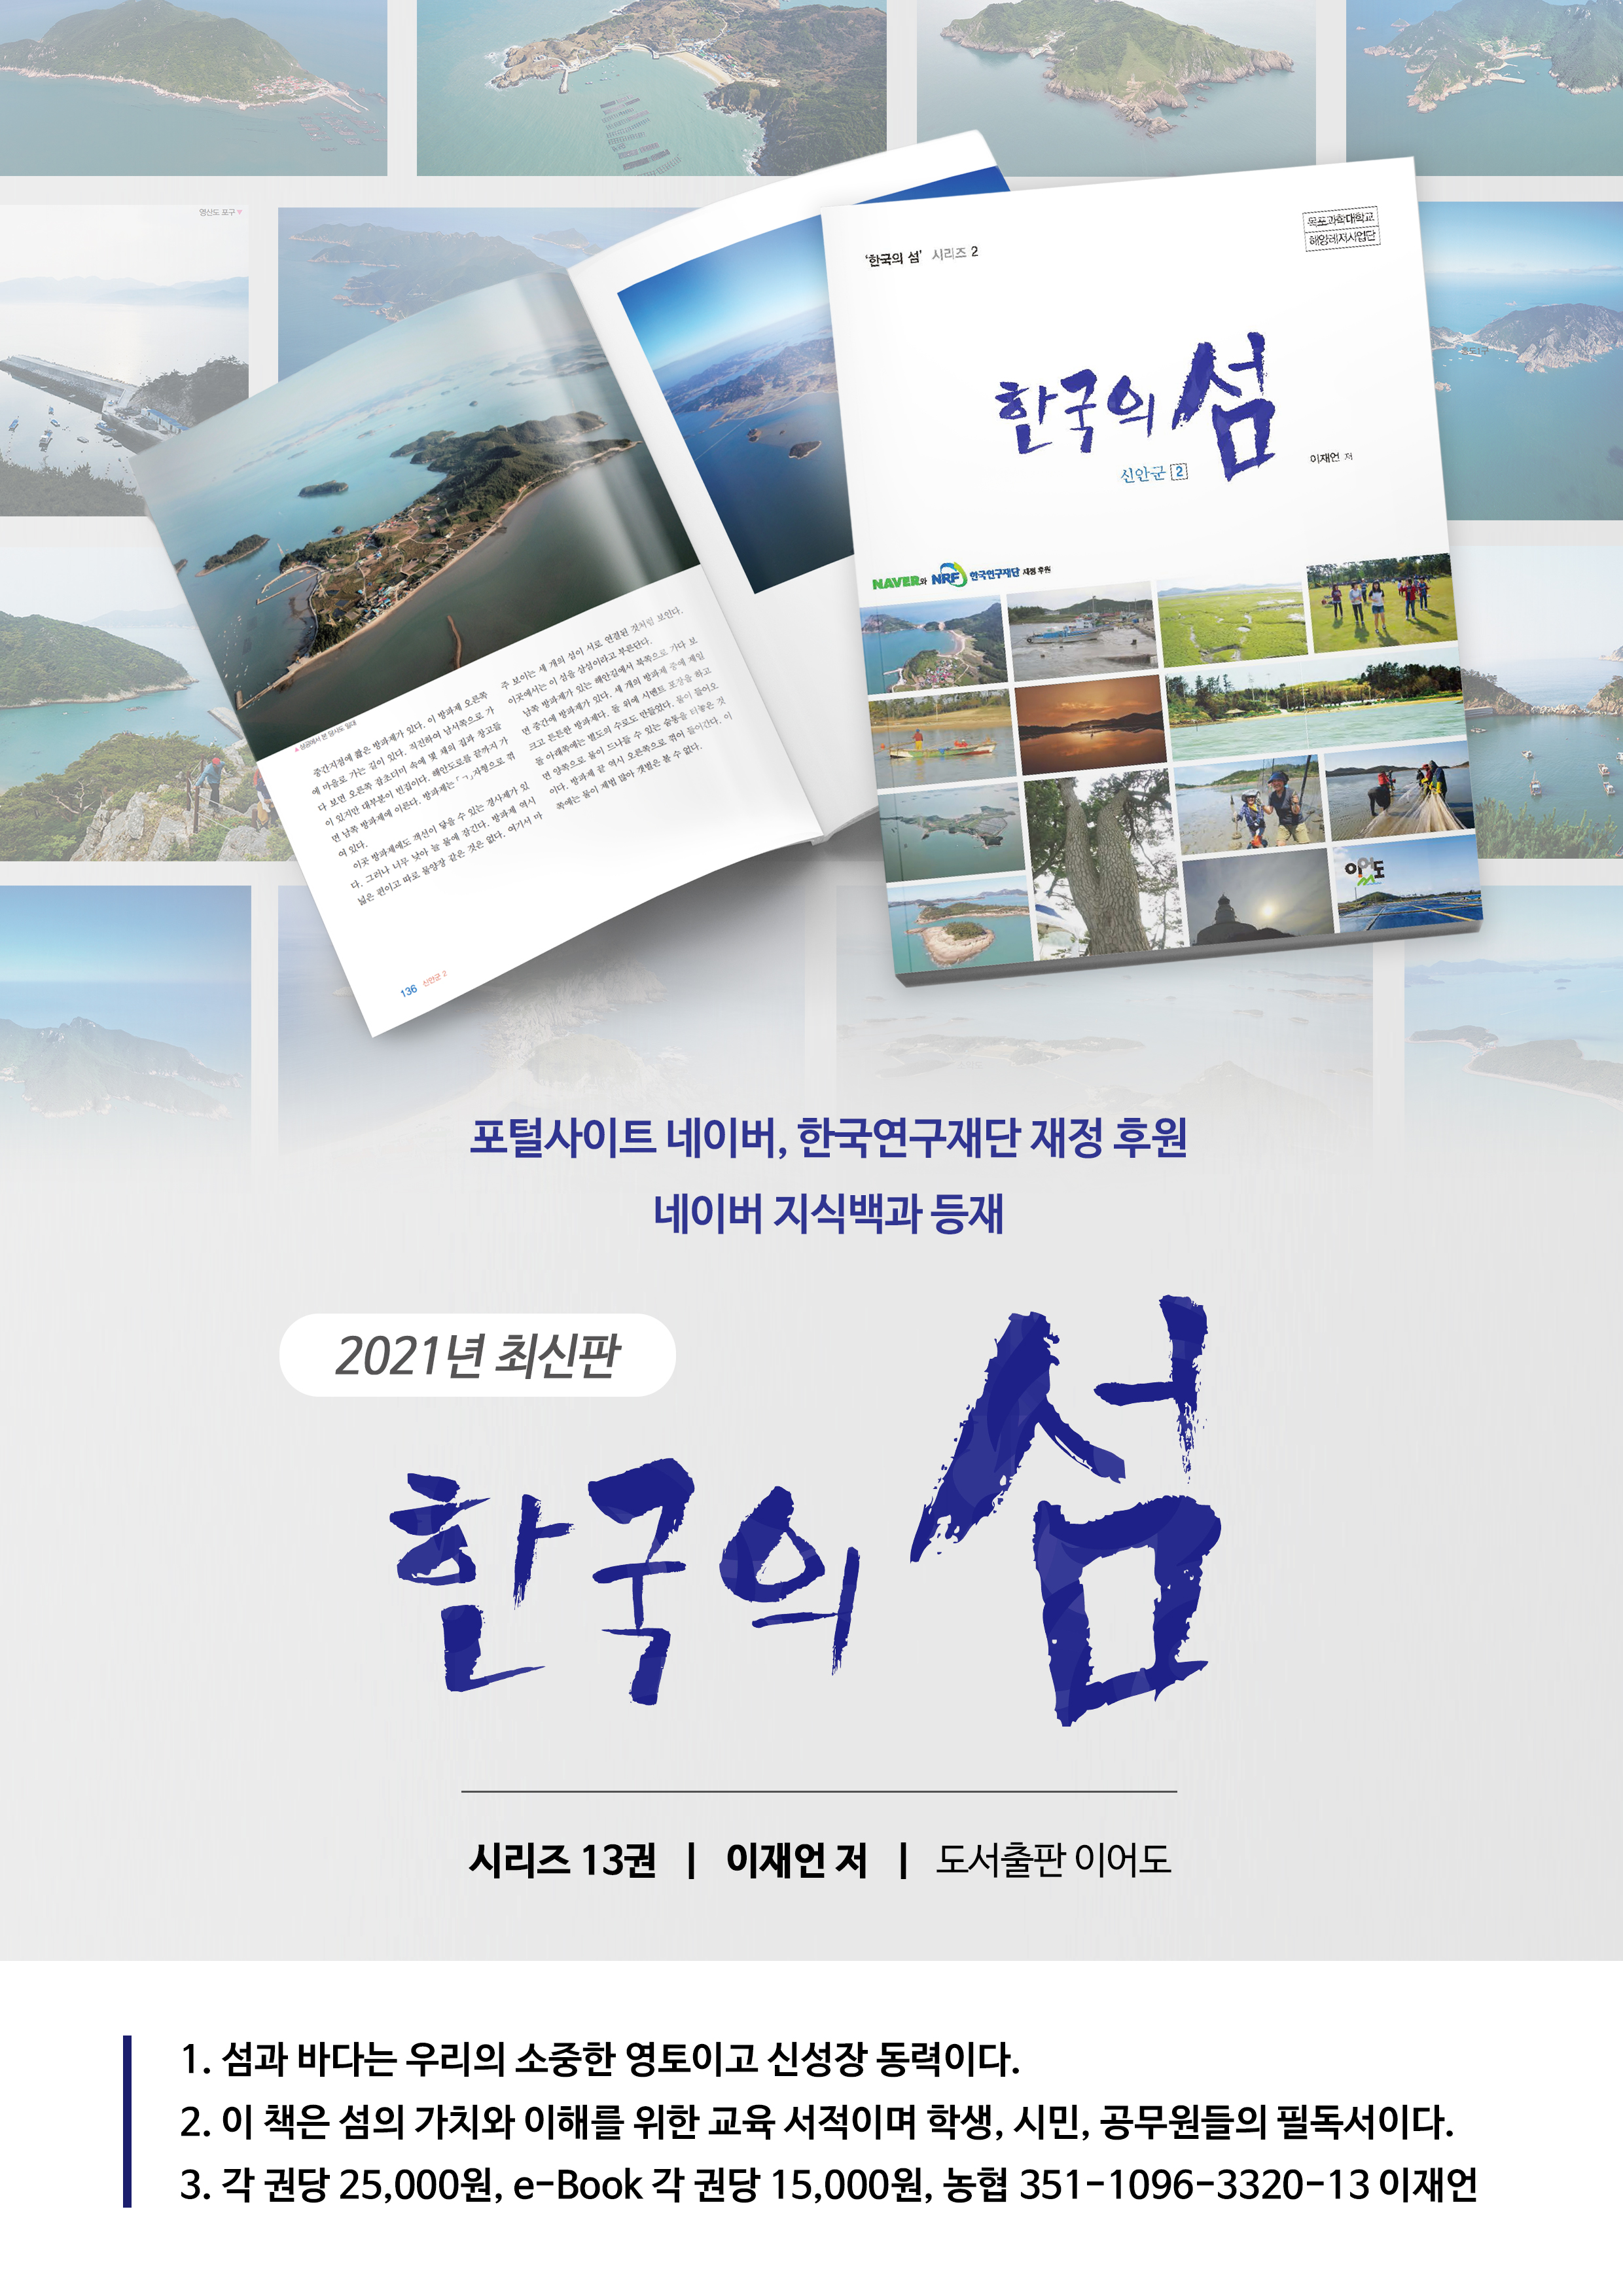 희망도서 - 네이버의 재정 후원으로 집필한 시리즈 13권 2쇄 책  소개